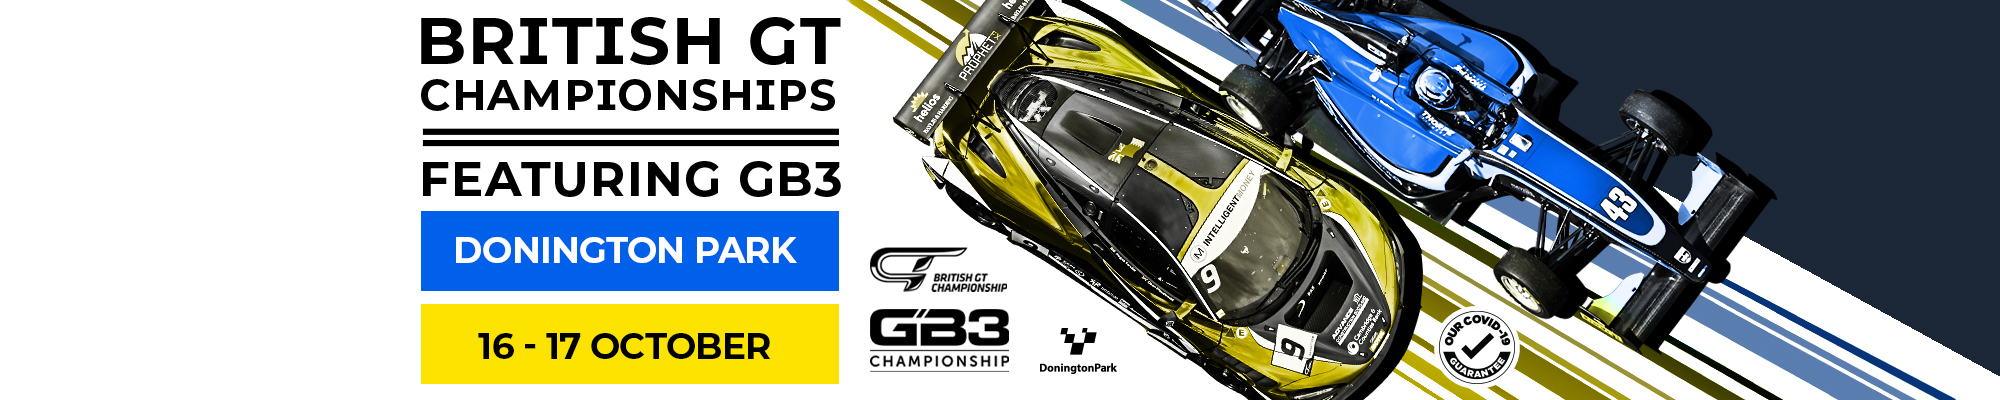 British GT & GB3 Championships